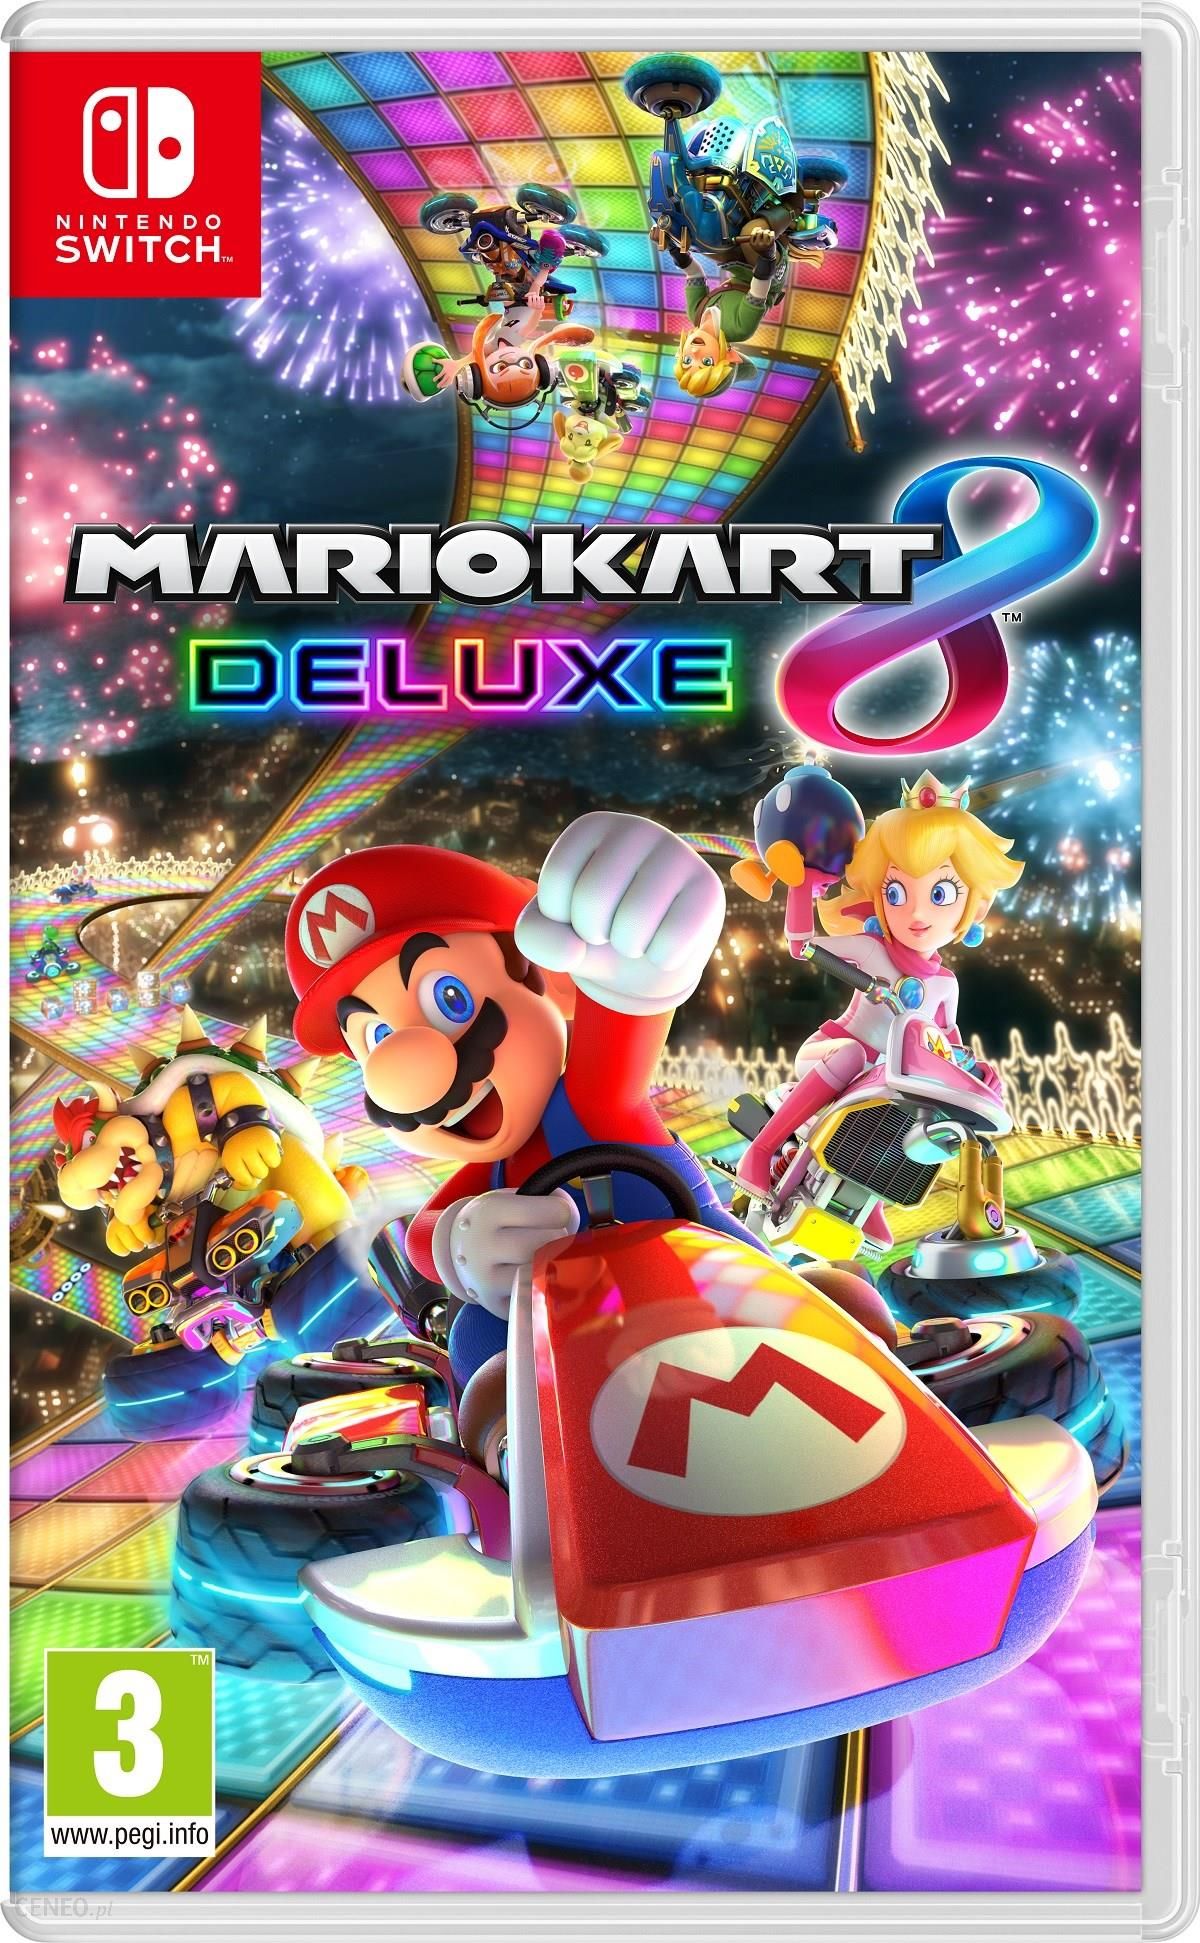 Jogo Switch Super Mario Maker 2 – MediaMarkt